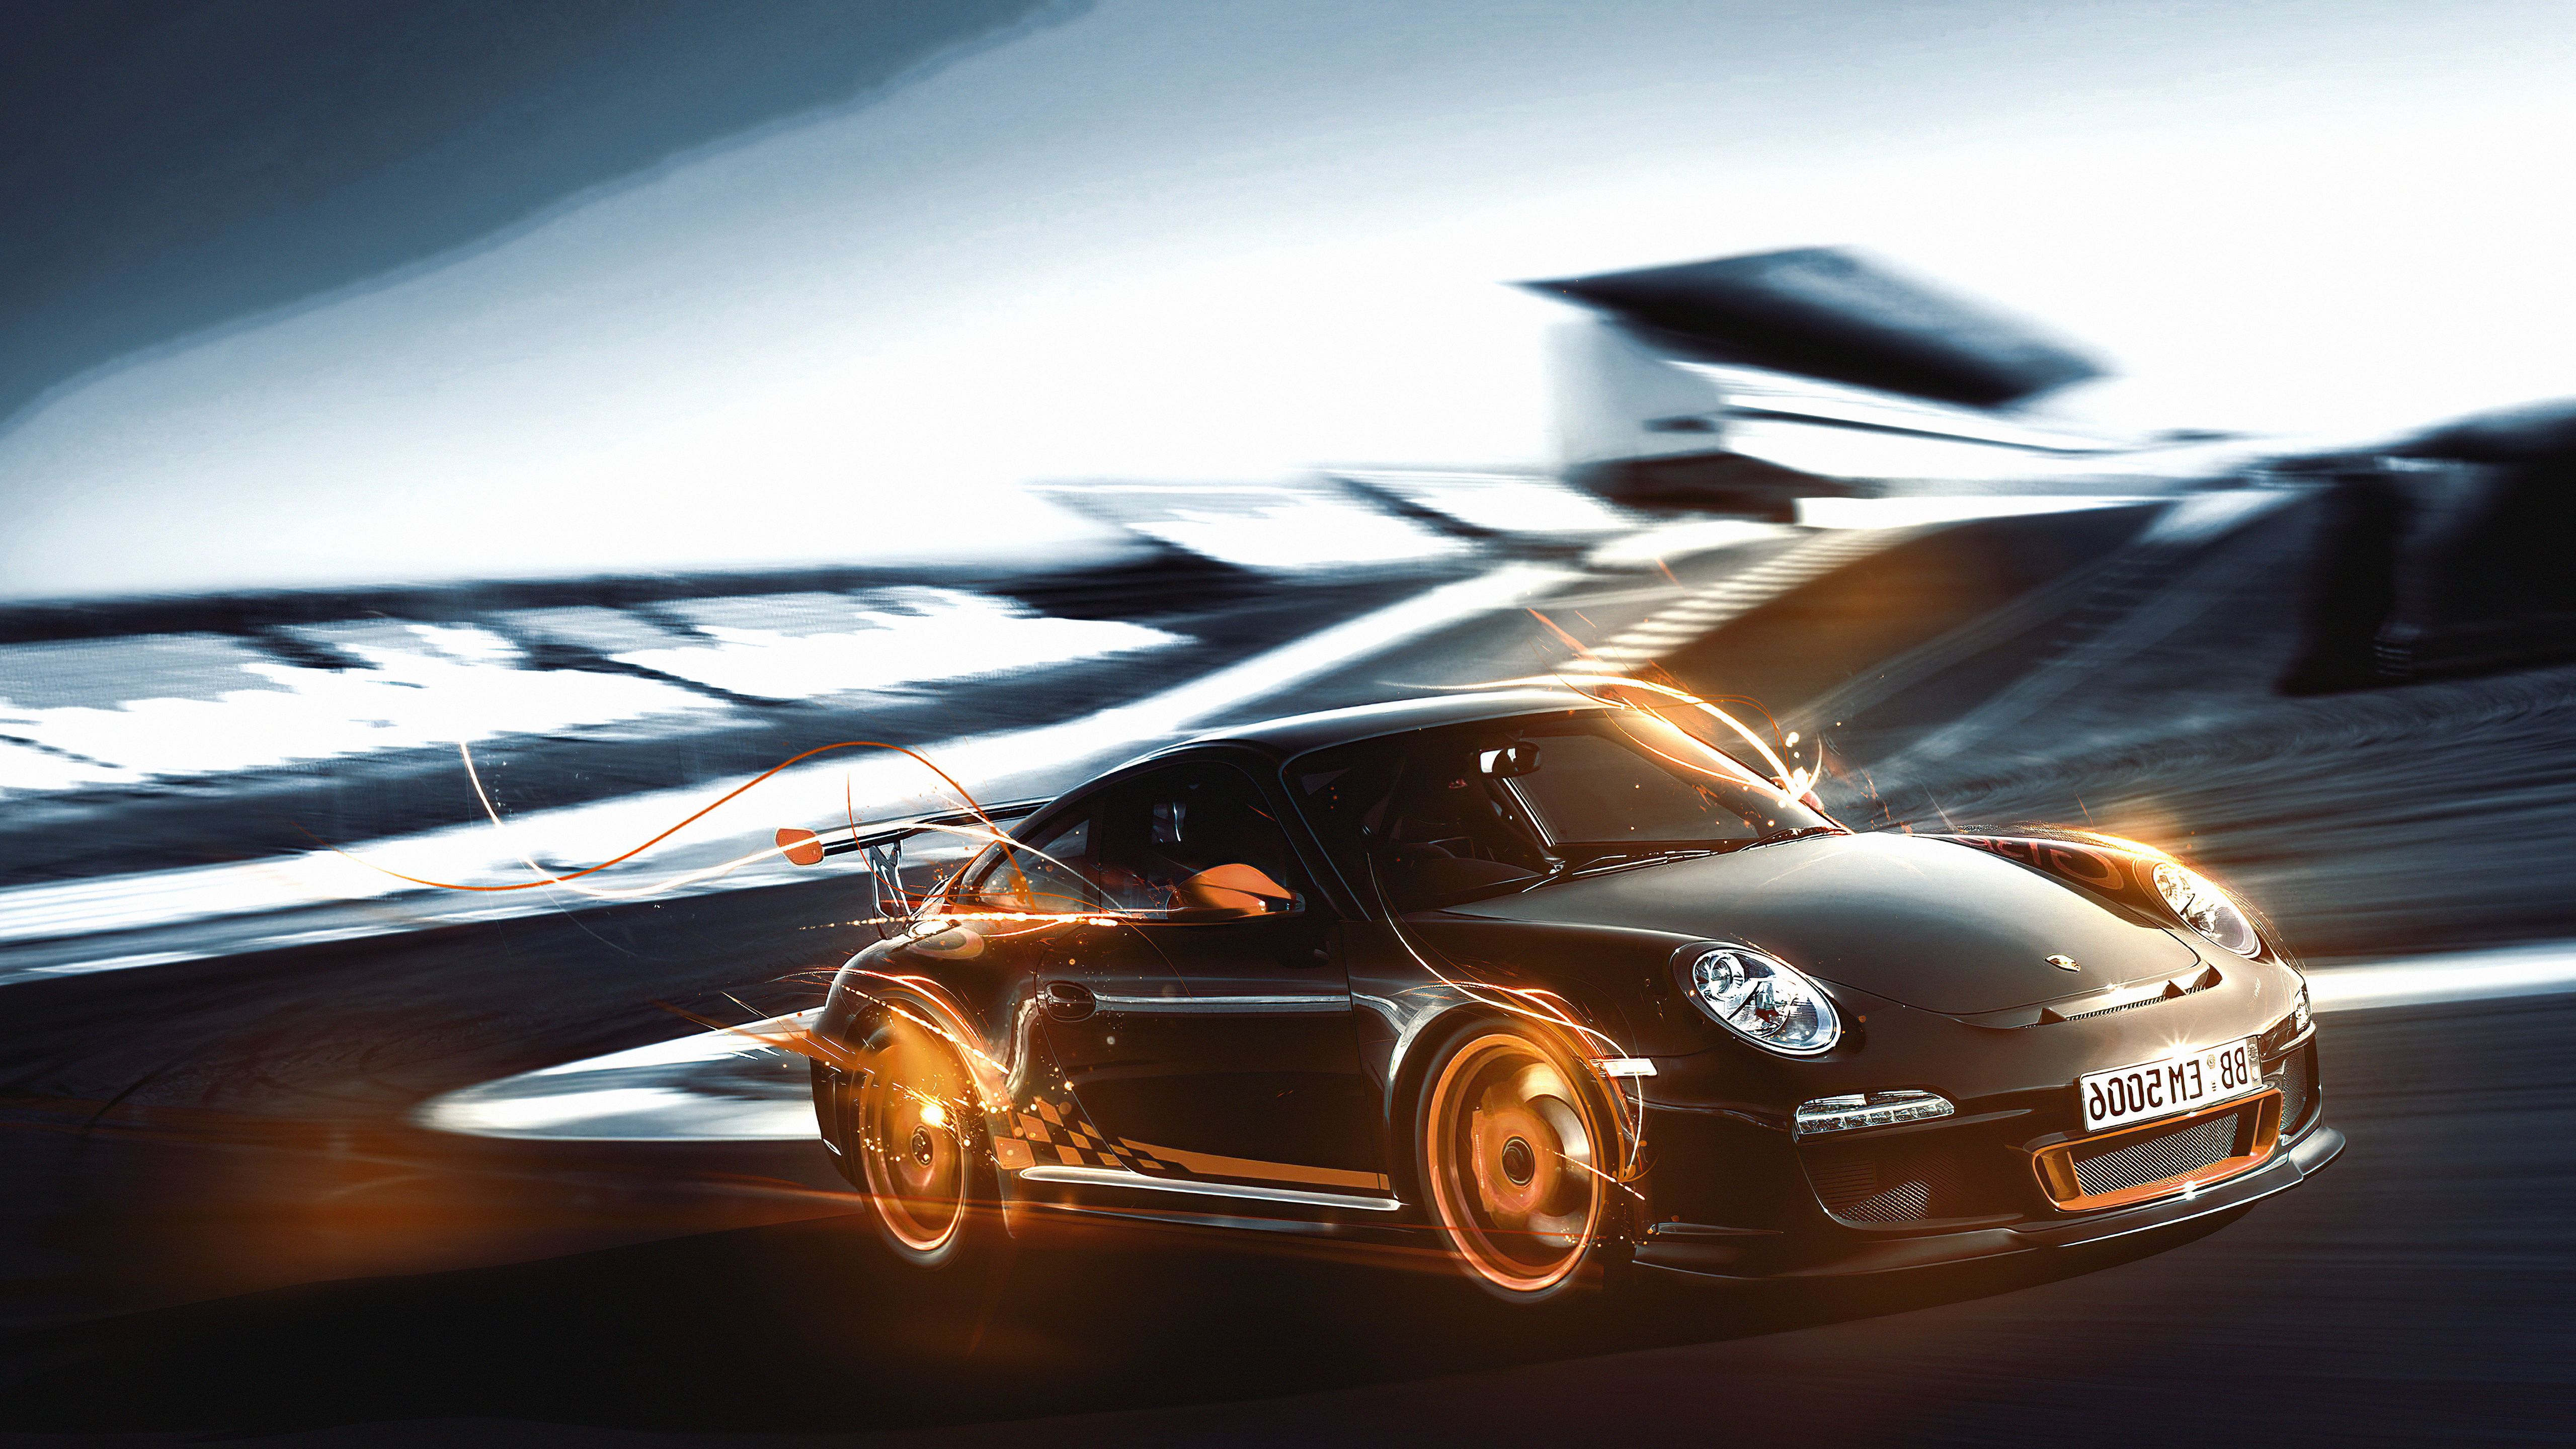 40+] Porsche 911 4k Wallpapers - WallpaperSafari